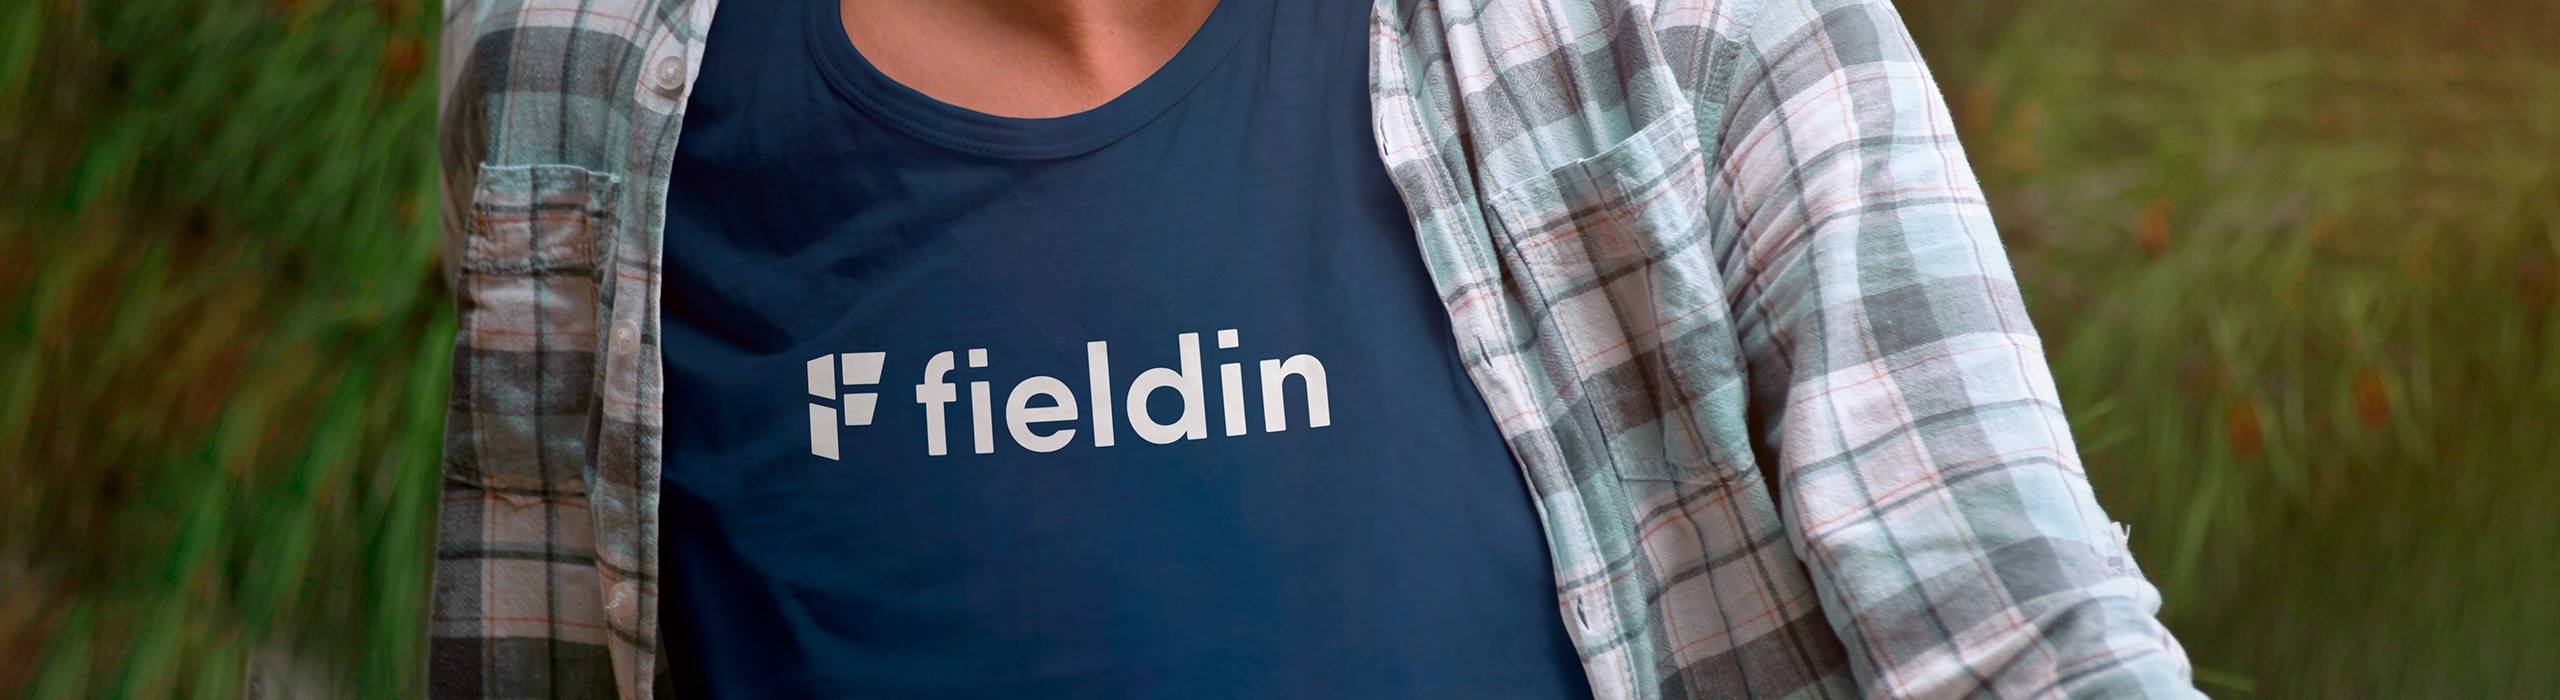 FieldIn - 08 - Natie Branding Agency